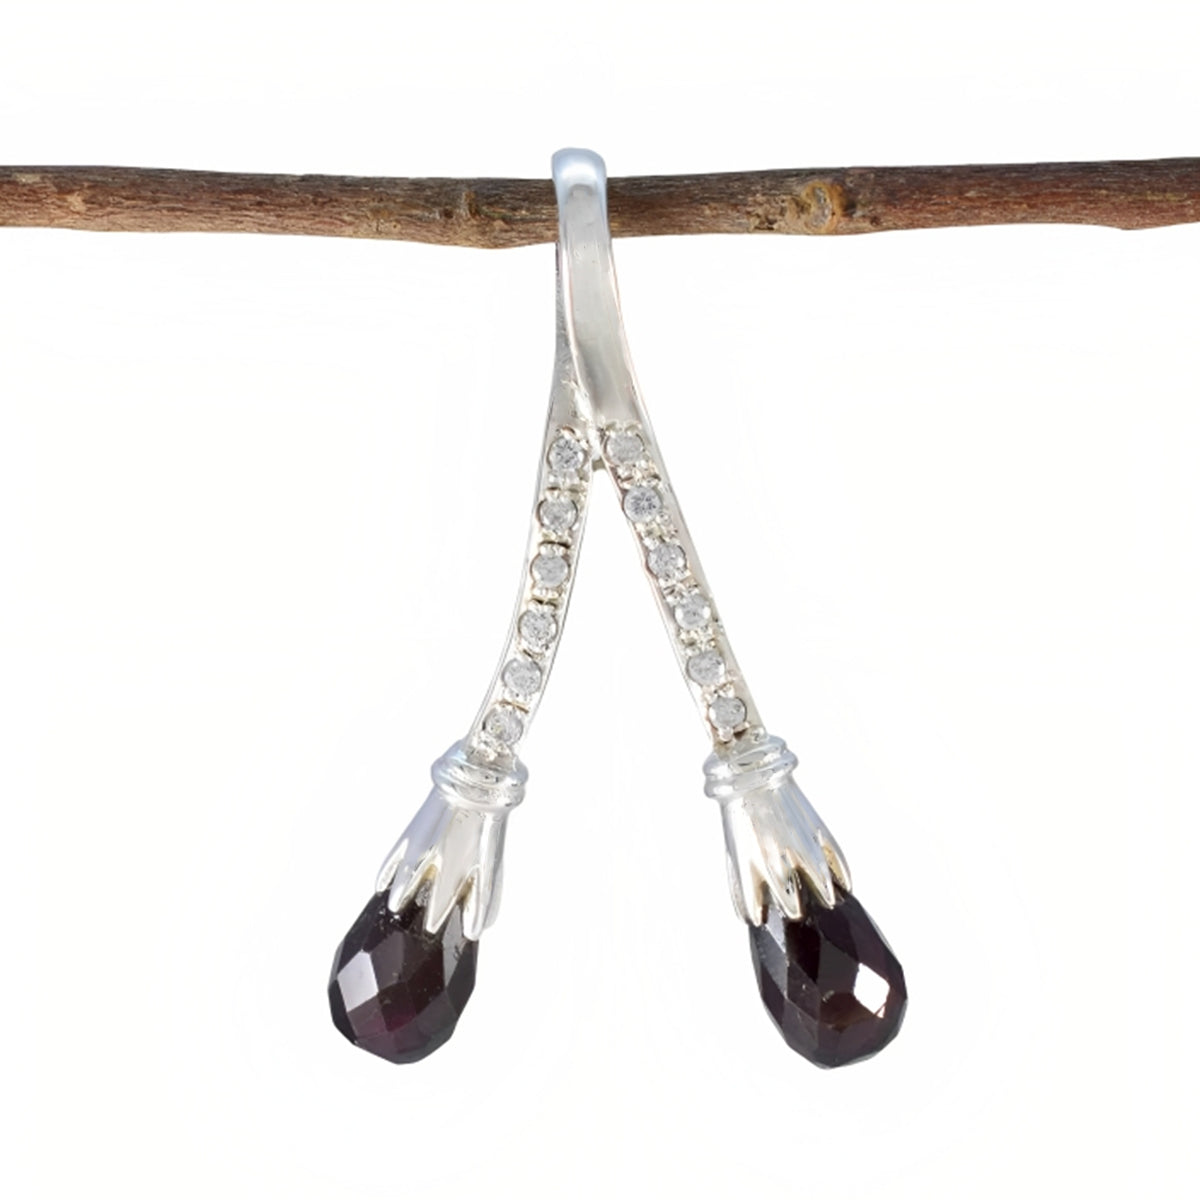 Riyo echte edelsteen peer geruit bruin rookkwarts 1113 sterling zilveren hanger cadeau voor verjaardag